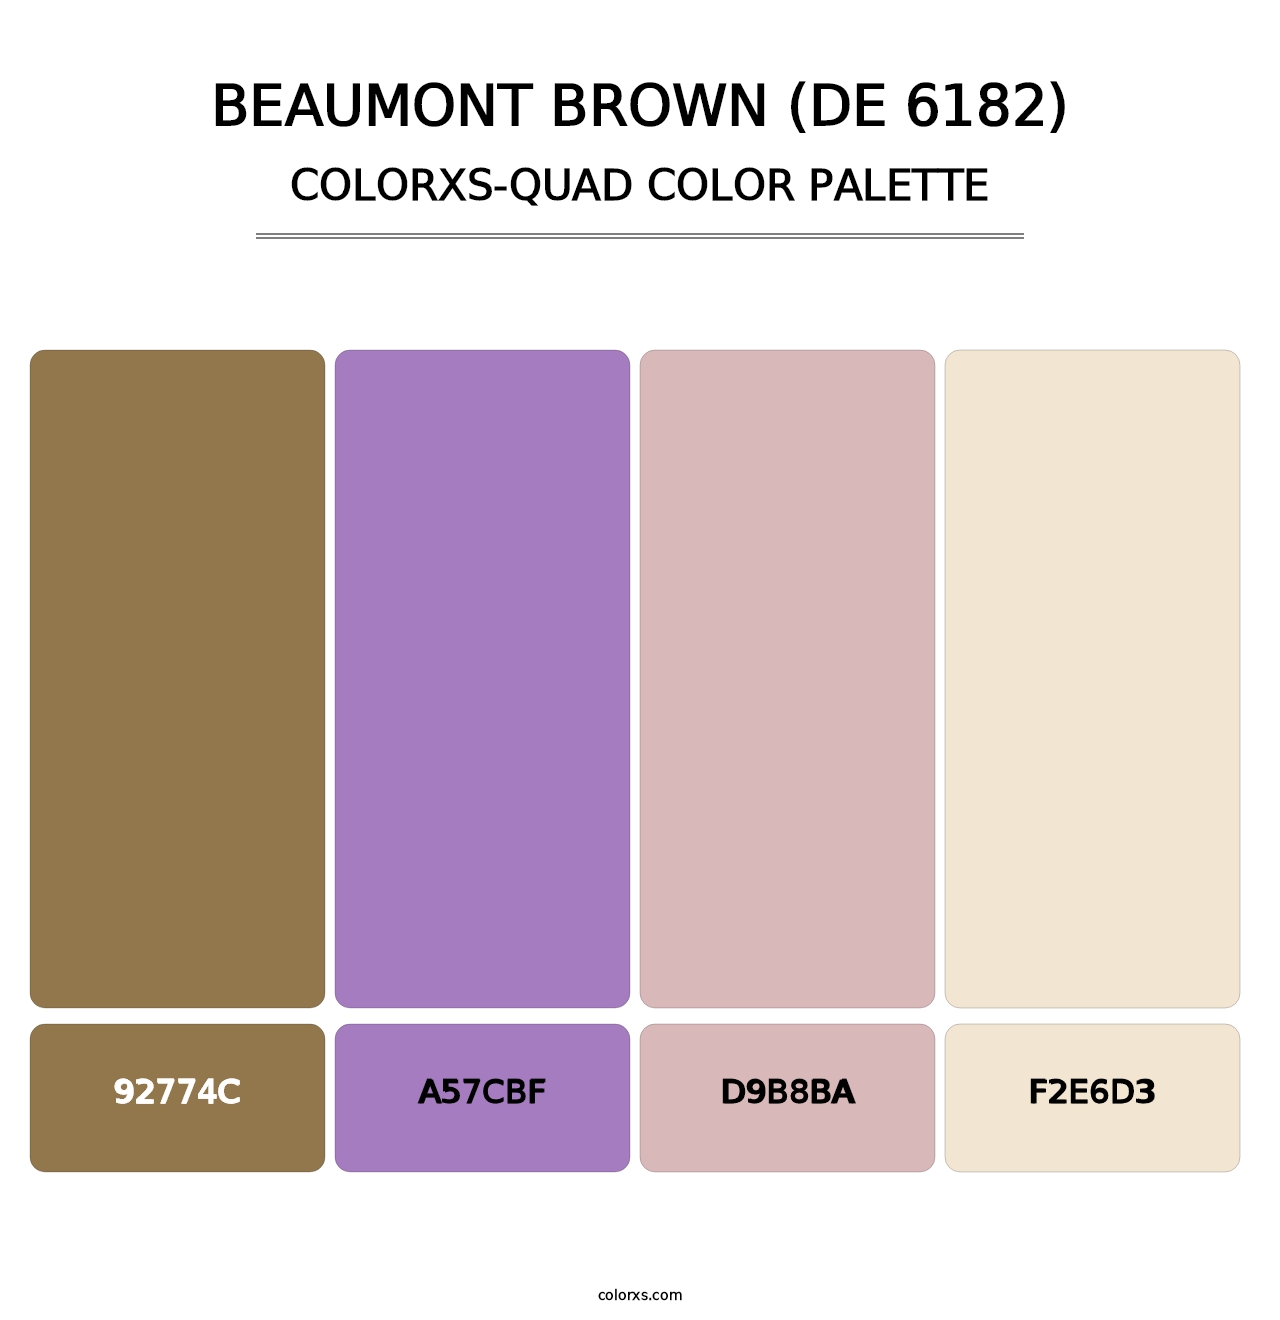 Beaumont Brown (DE 6182) - Colorxs Quad Palette